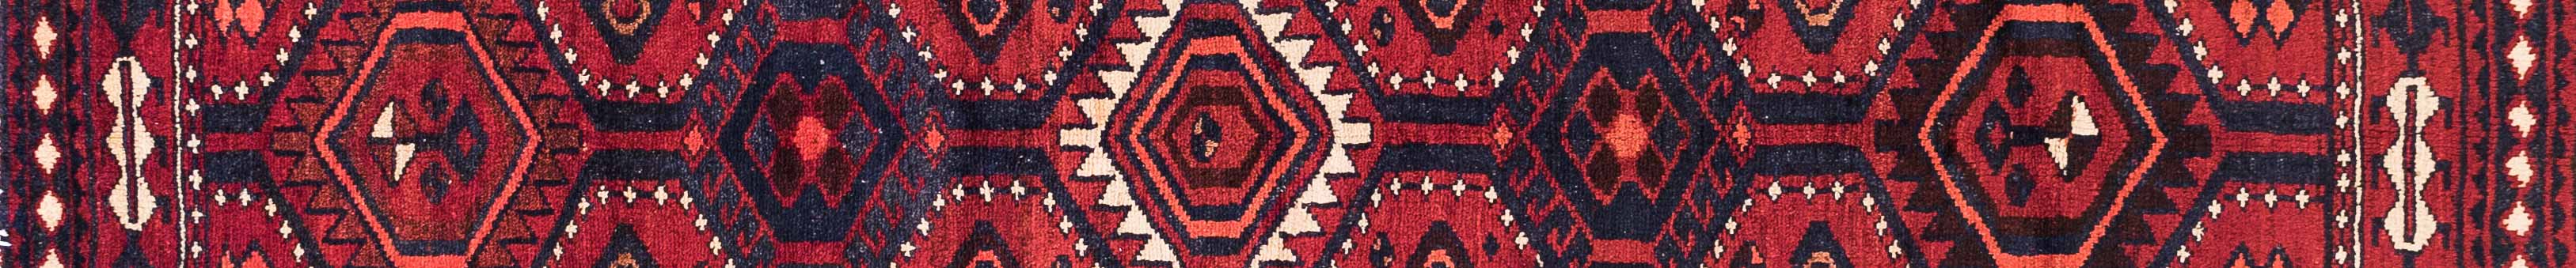 Lori Persian Carpet Rug N1Carpet Canada Montreal Tapis Persan 1050